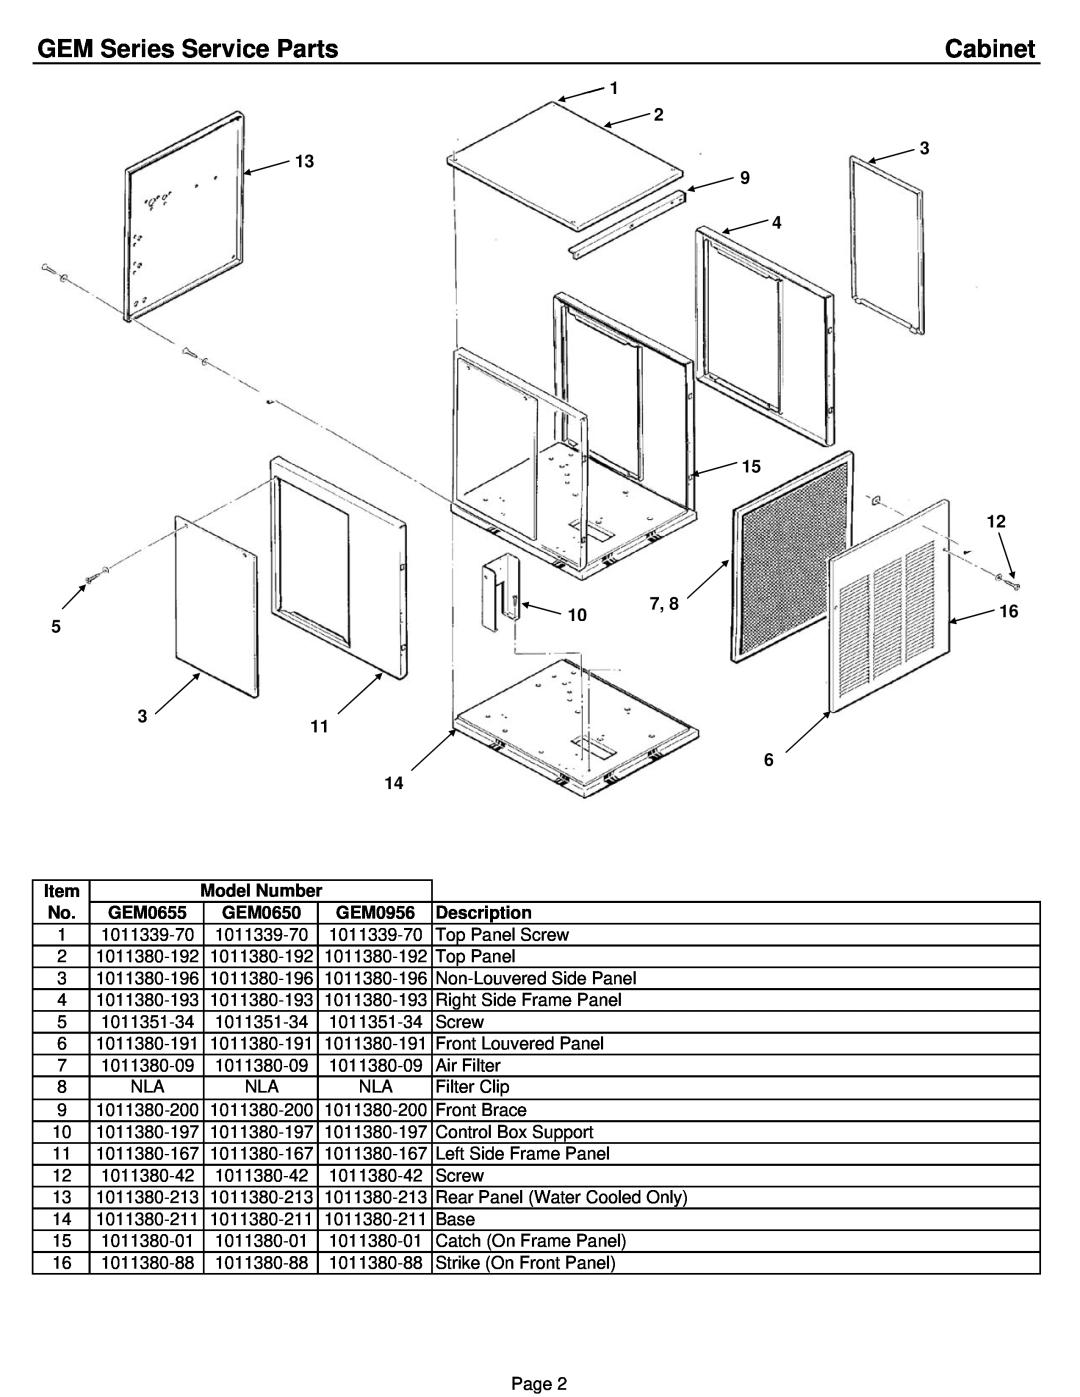 Ice-O-Matic GEM1256A/W/R manual Cabinet, GEM Series Service Parts, Model Number, GEM0655, GEM0650, GEM0956, Description 